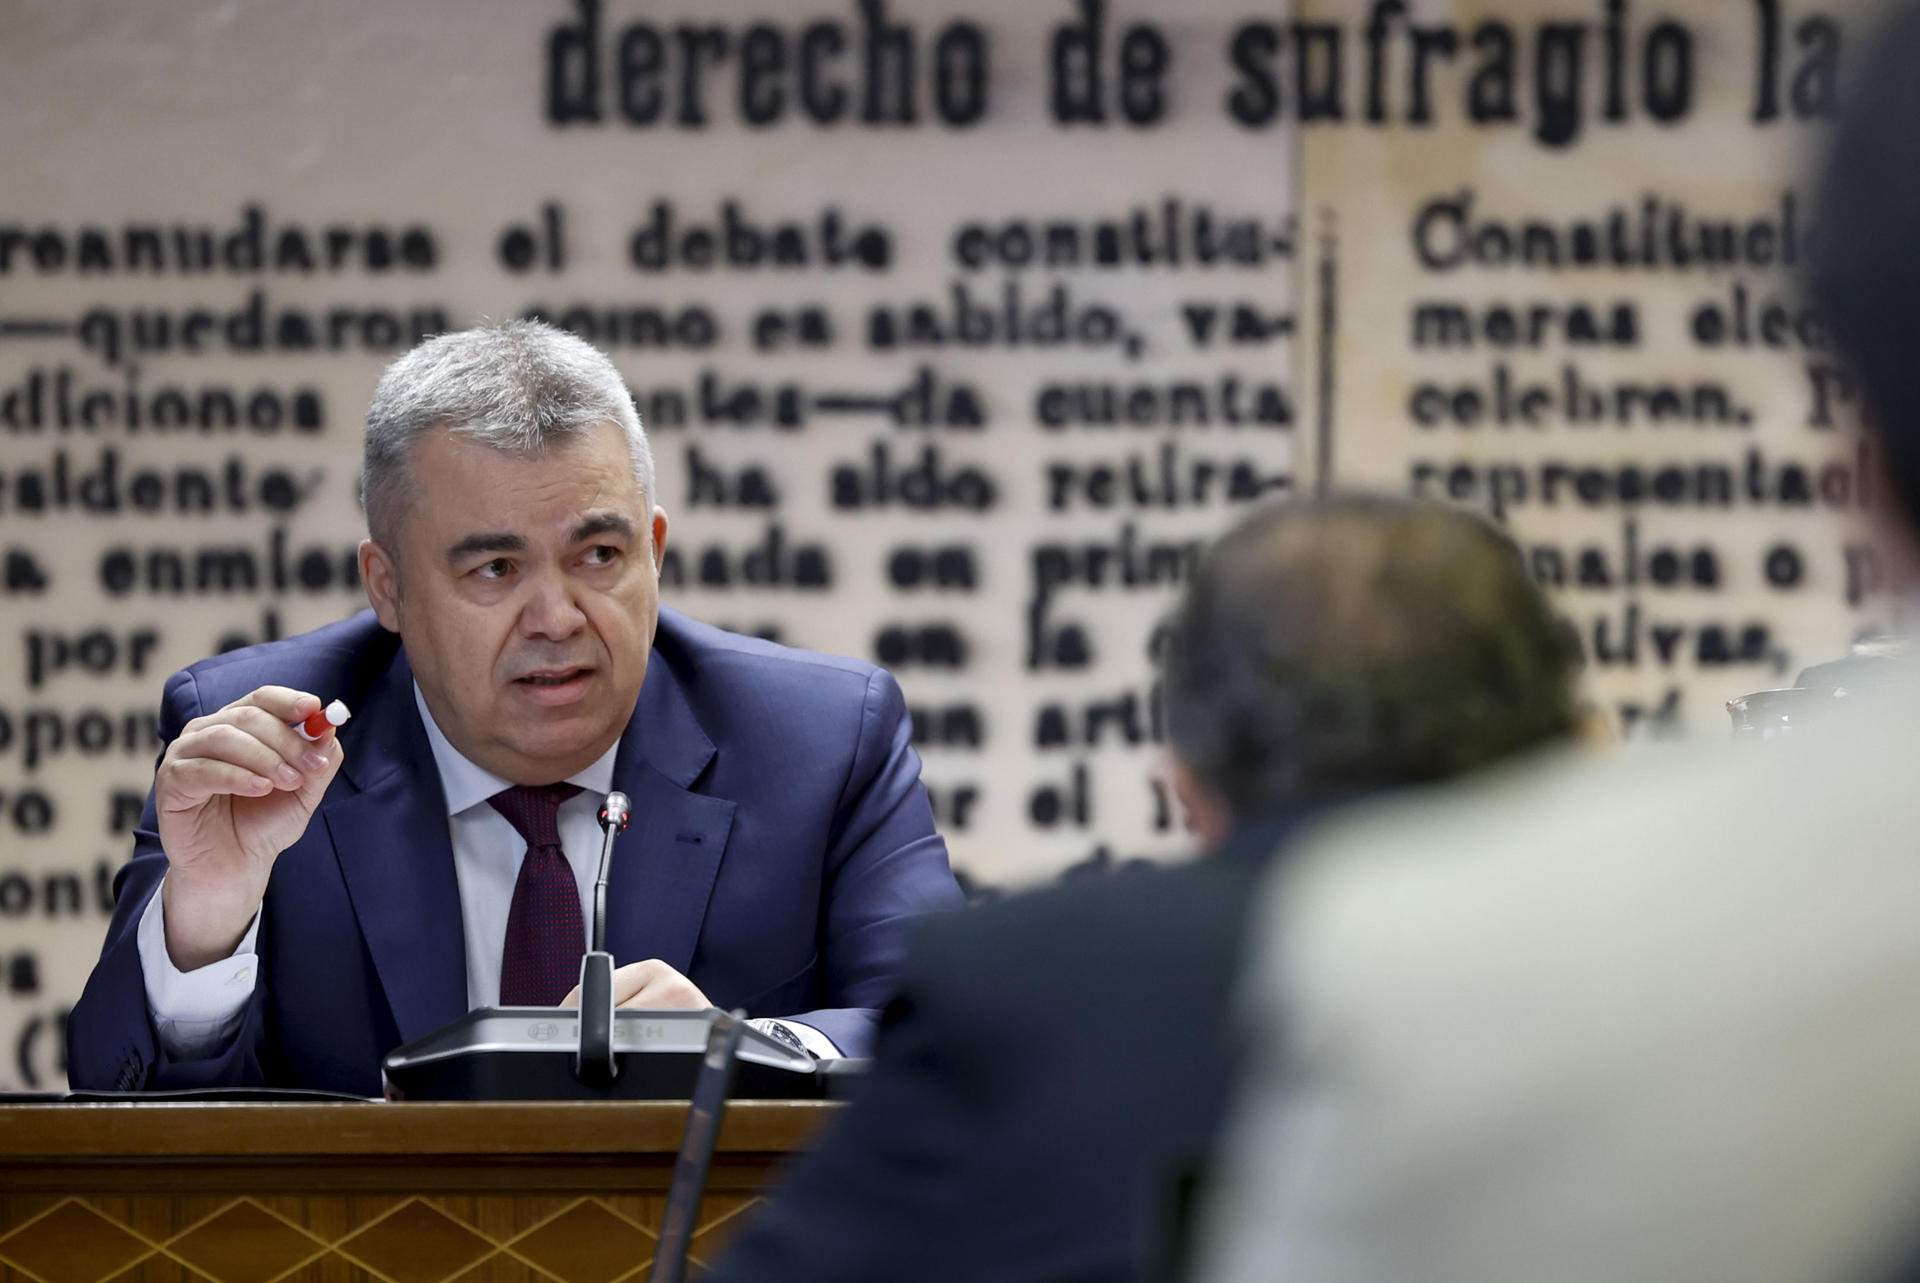 El número 3 del PSOE se distancia de Koldo García: “Nunca ha trabajado para mí directamente”